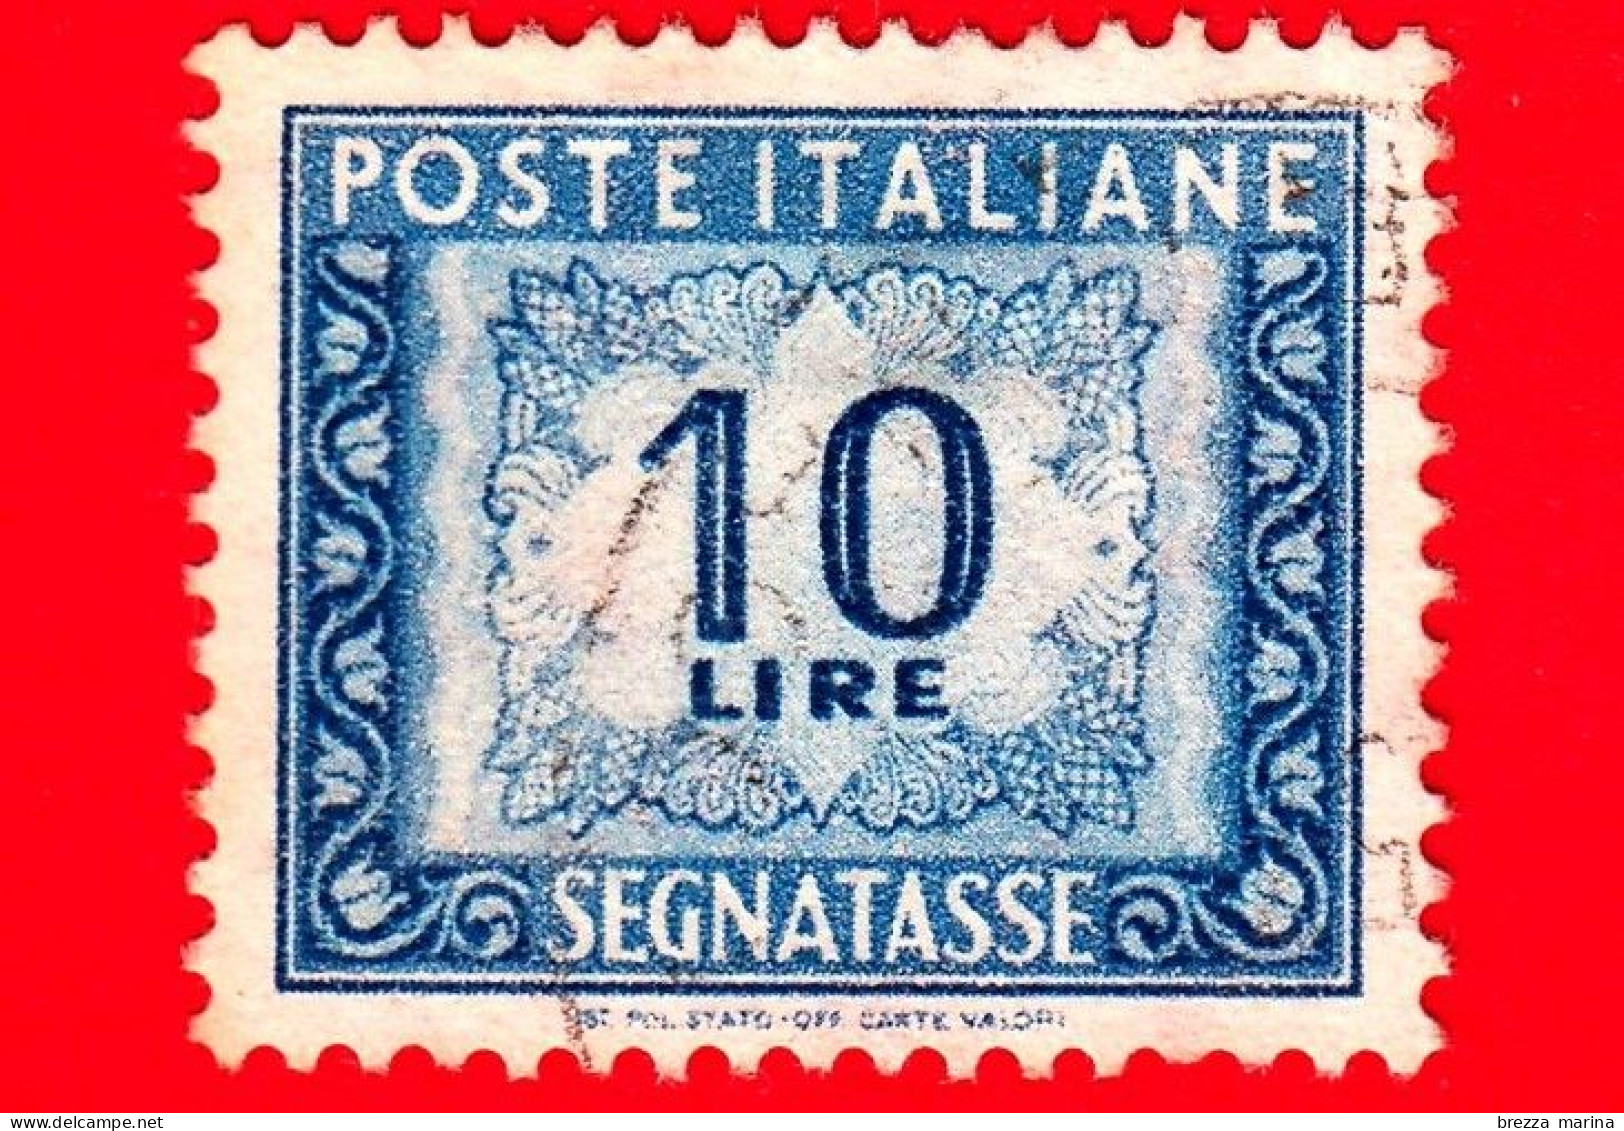 ITALIA - Usato - 1955 - Cifra E Decorazioni, Filigrana Stelle - Segnatasse - Cifra E Decorazioni - 10 L. - Postage Due